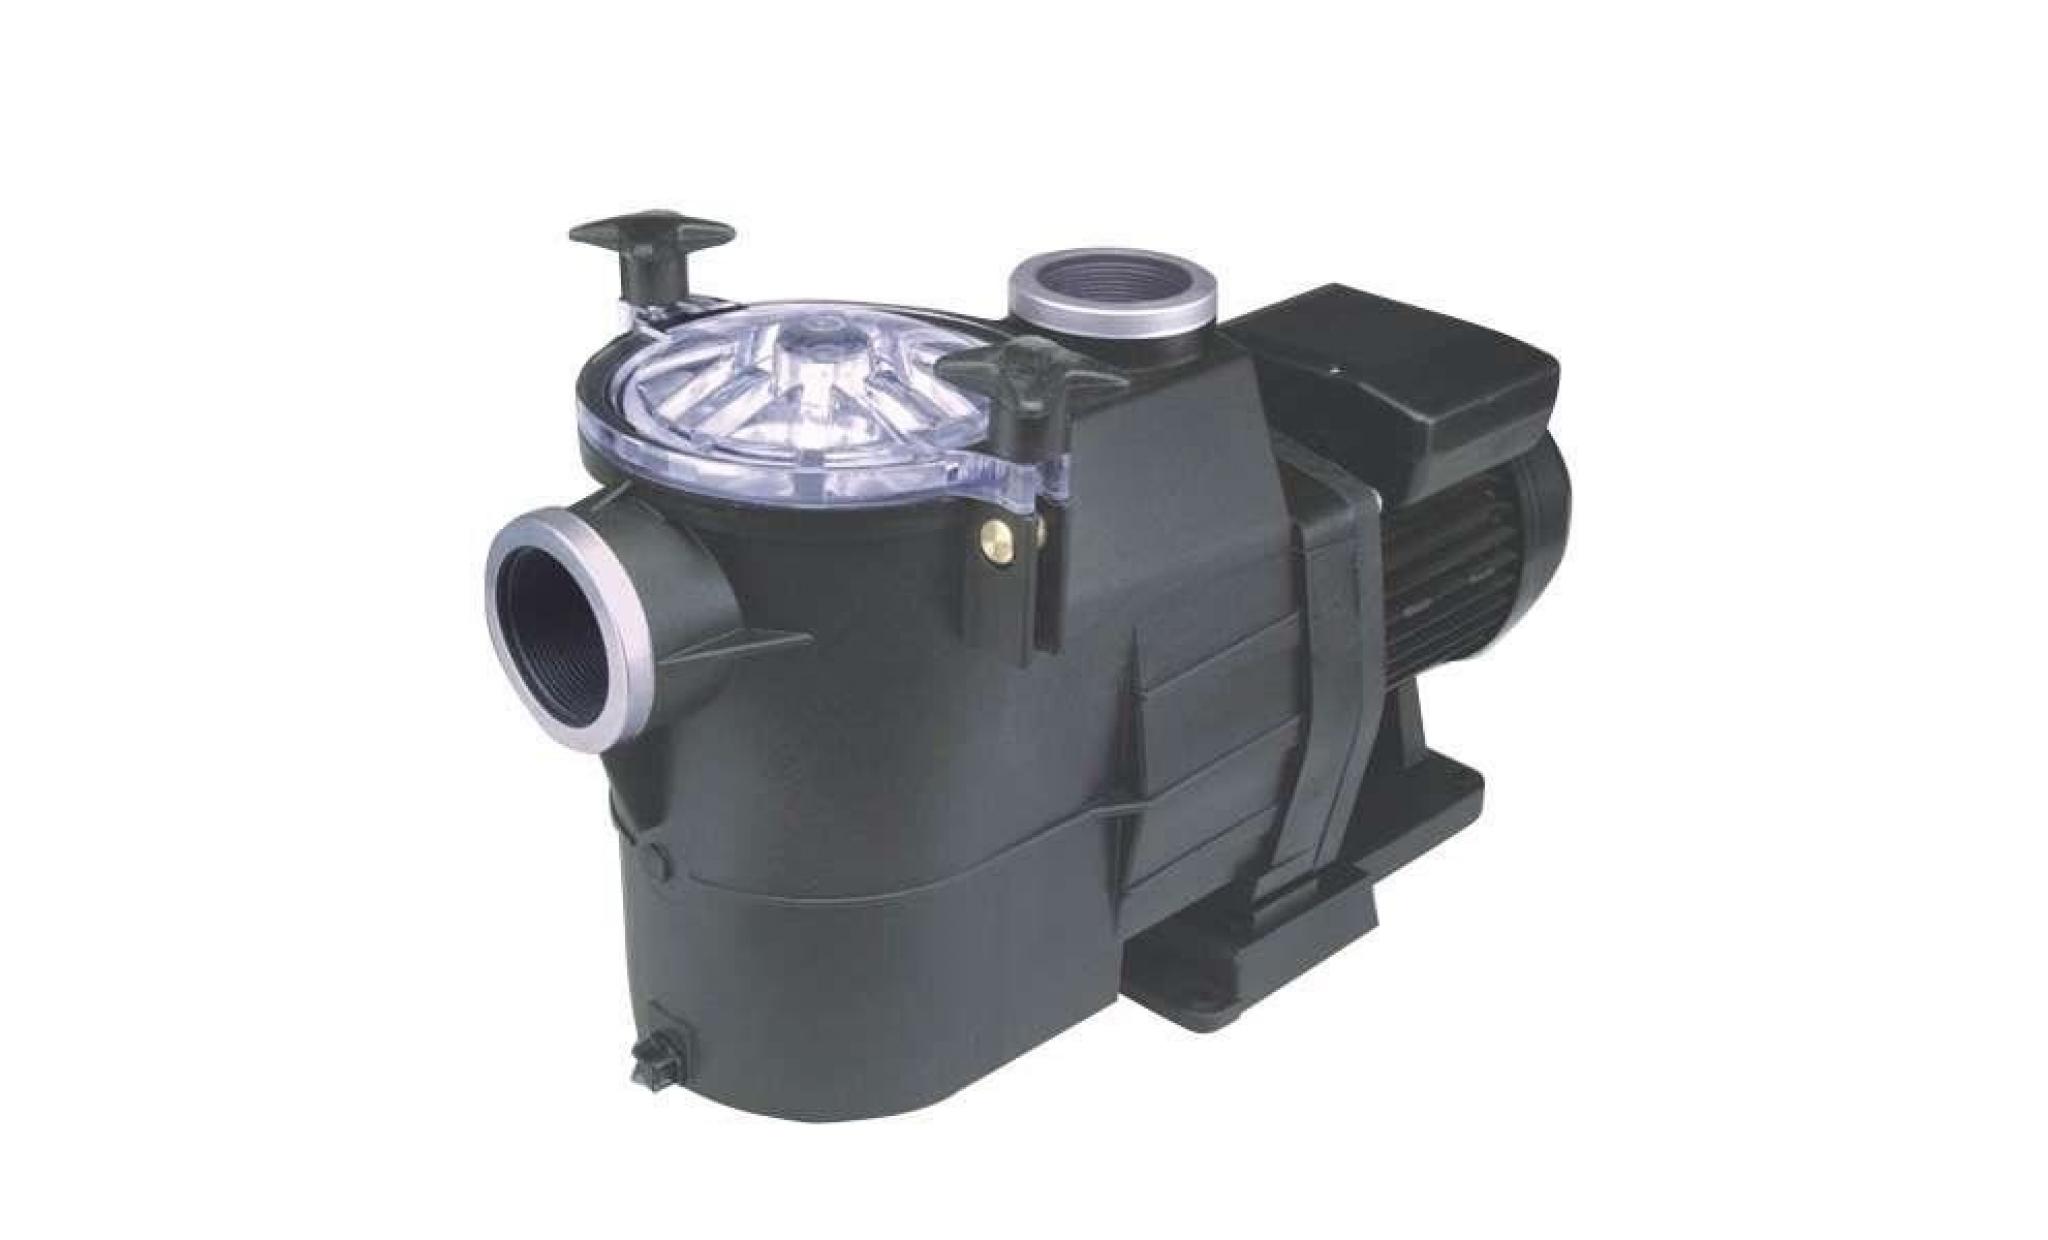 pompe filtration astral europa 1 cv mono 15,4 m3/h